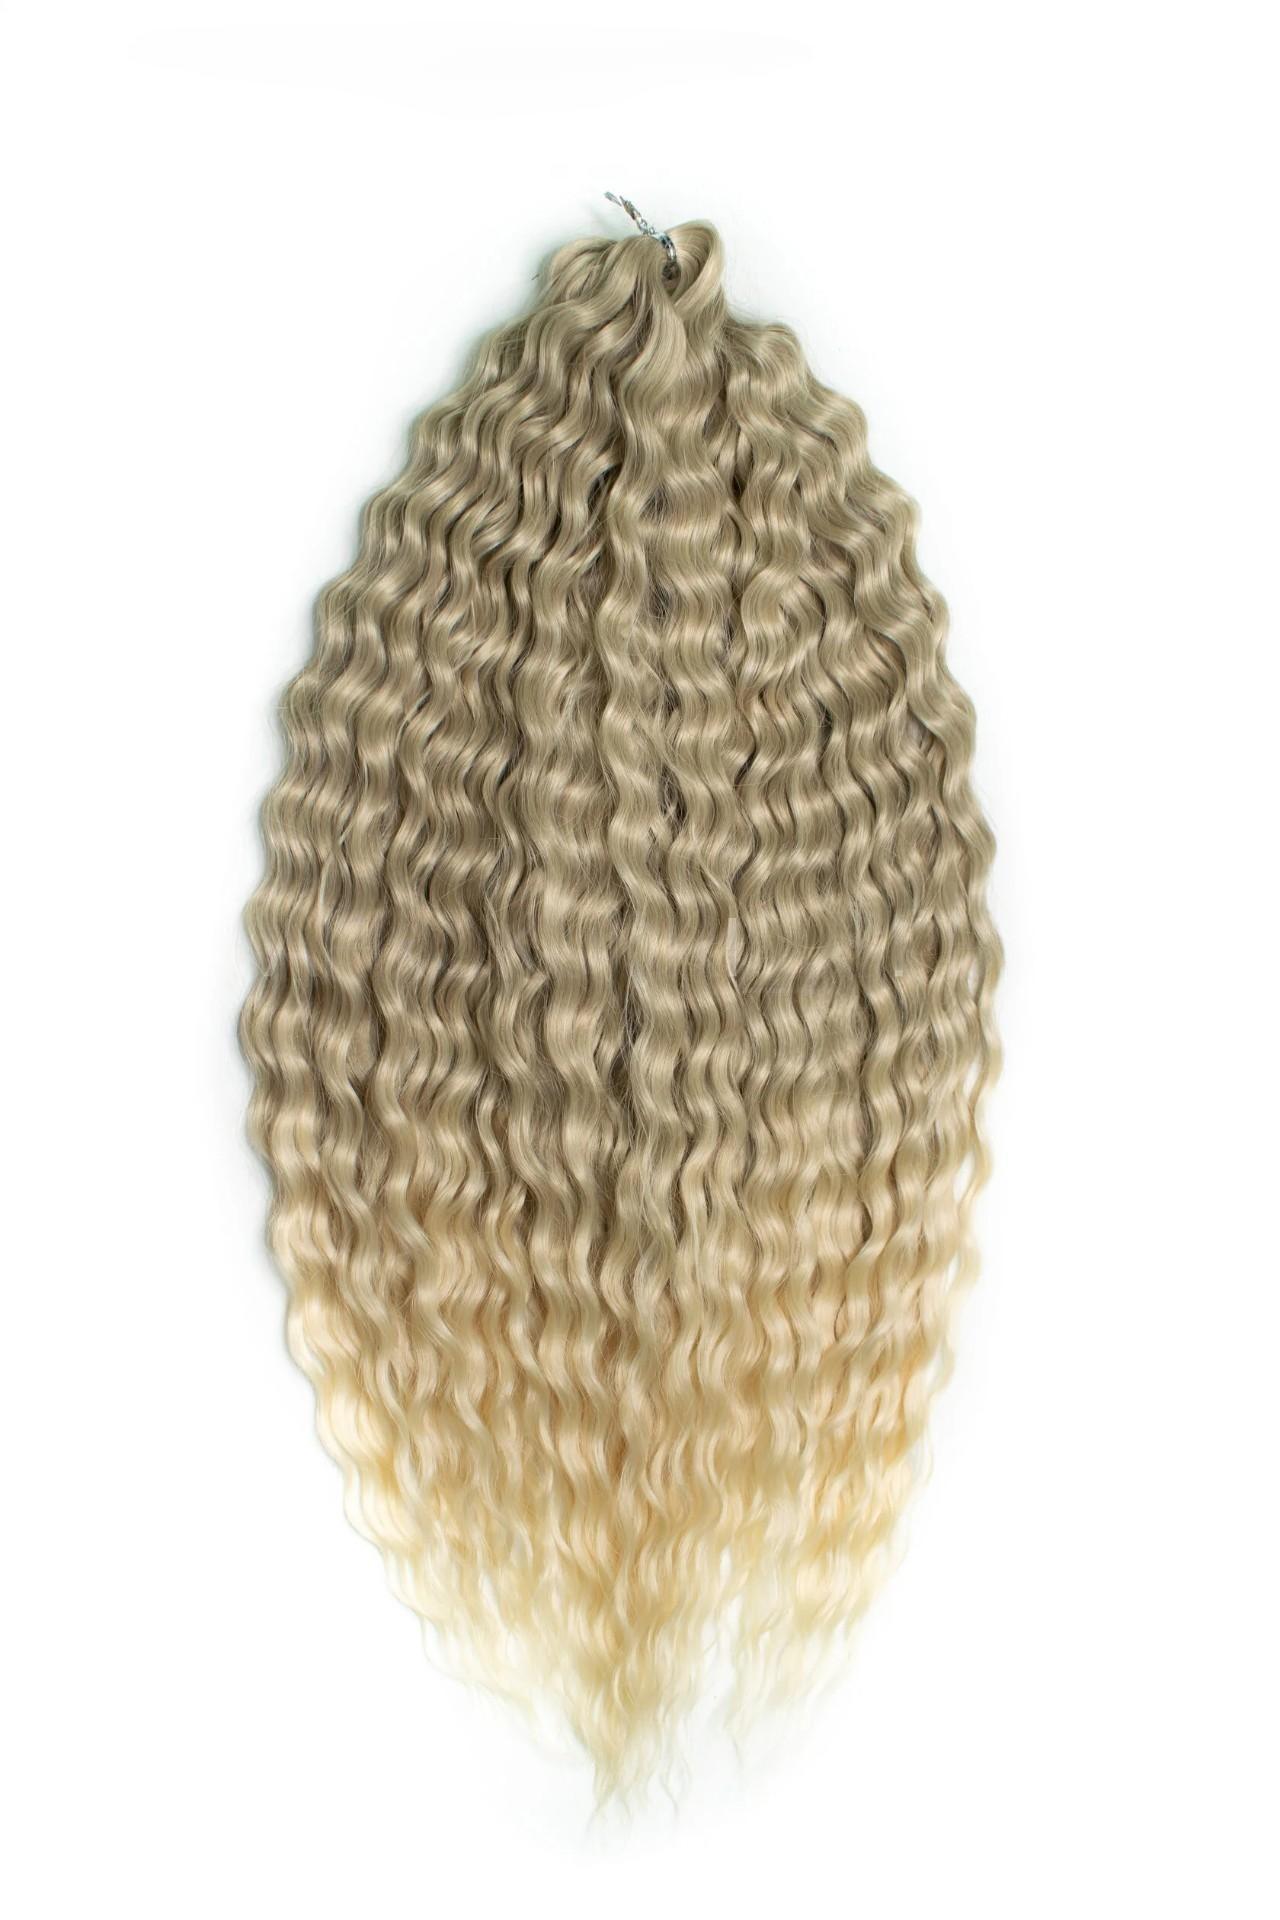 Афрокудри для плетения волос Ariel T16 613 светло-русый длина 55см вес 300г